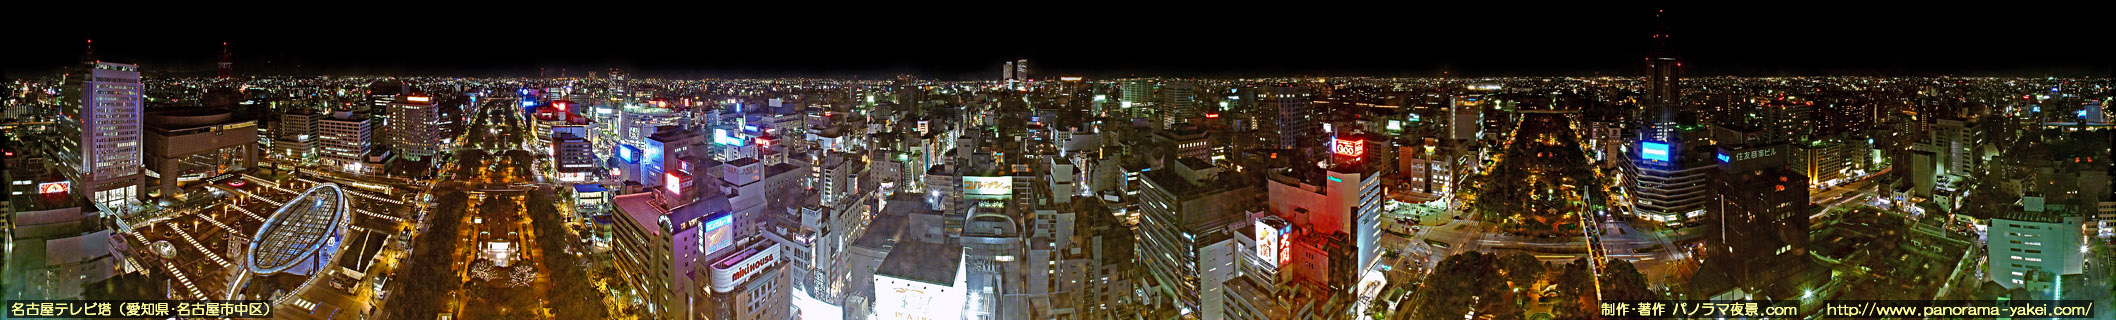 名古屋テレビ塔からの360度パノラマ夜景写真